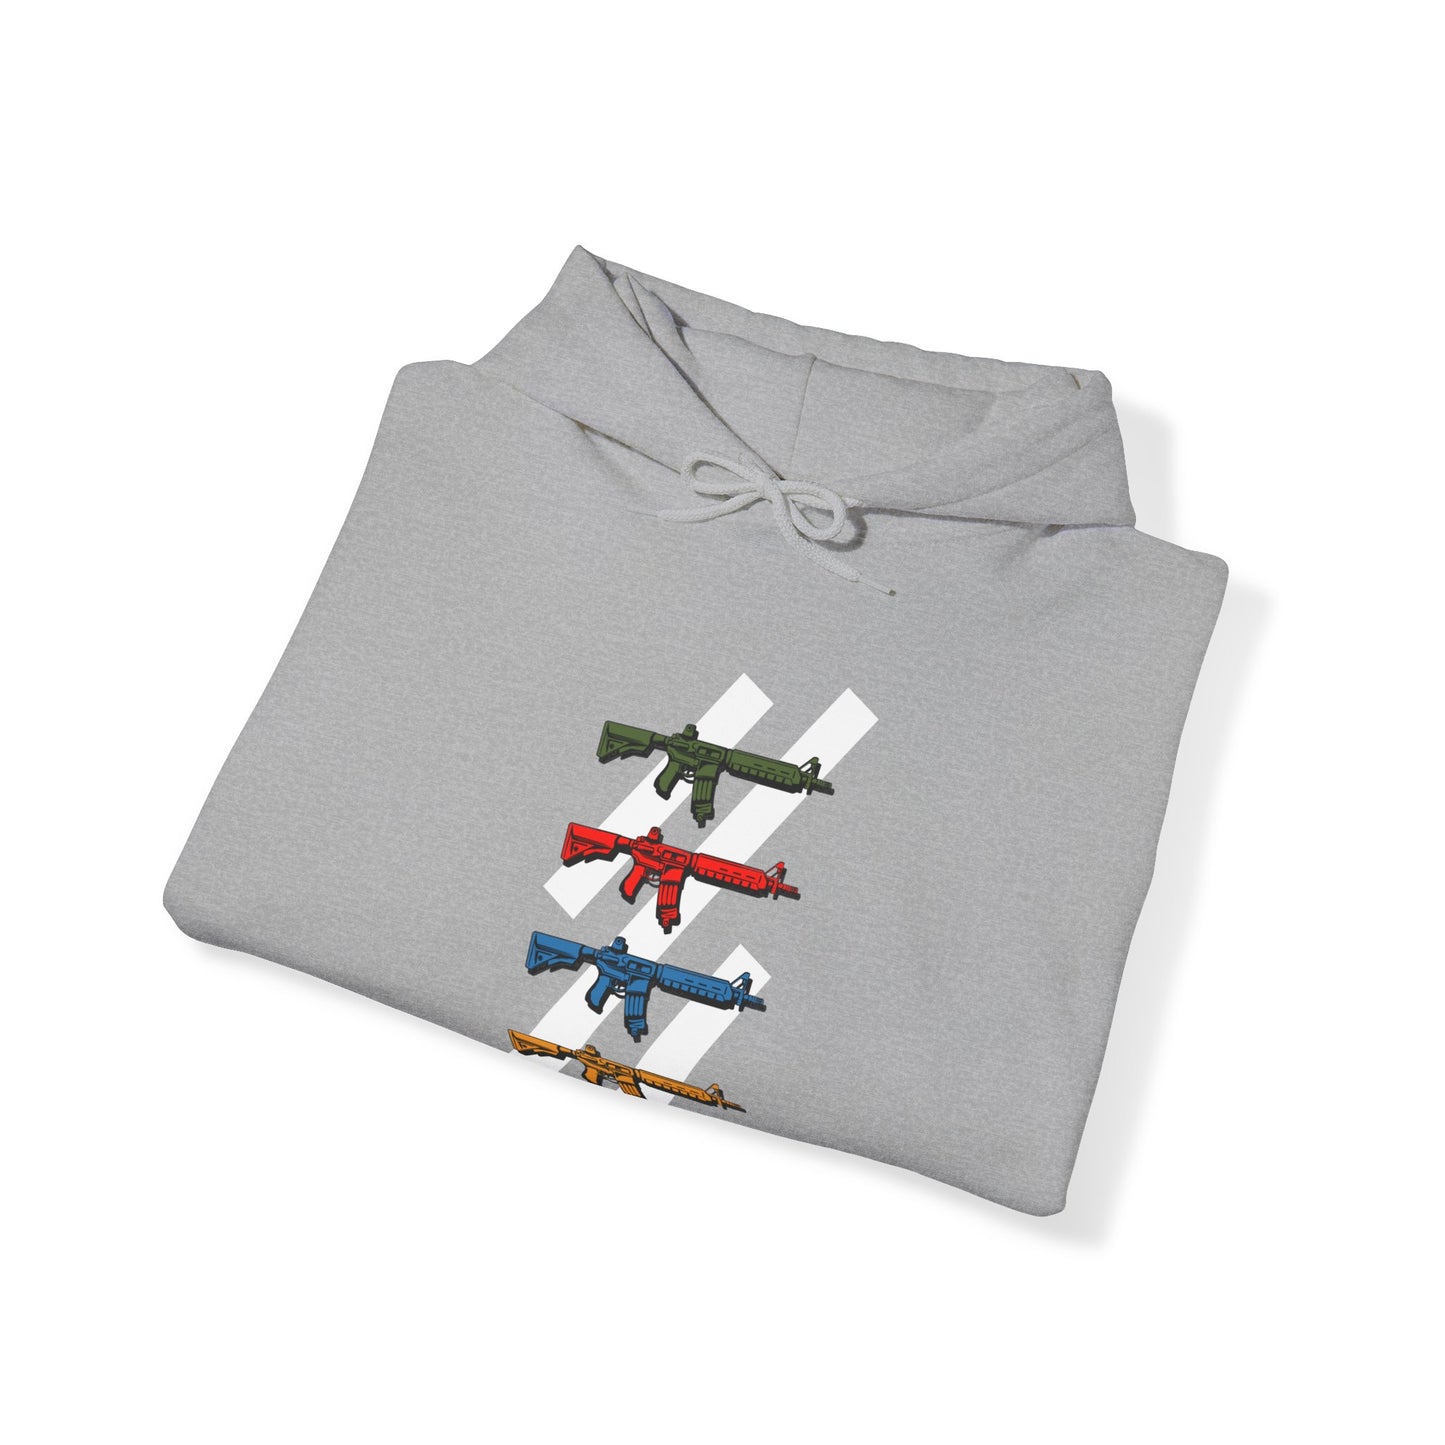 The Pew Pew Hooded Sweatshirt/Hoodie